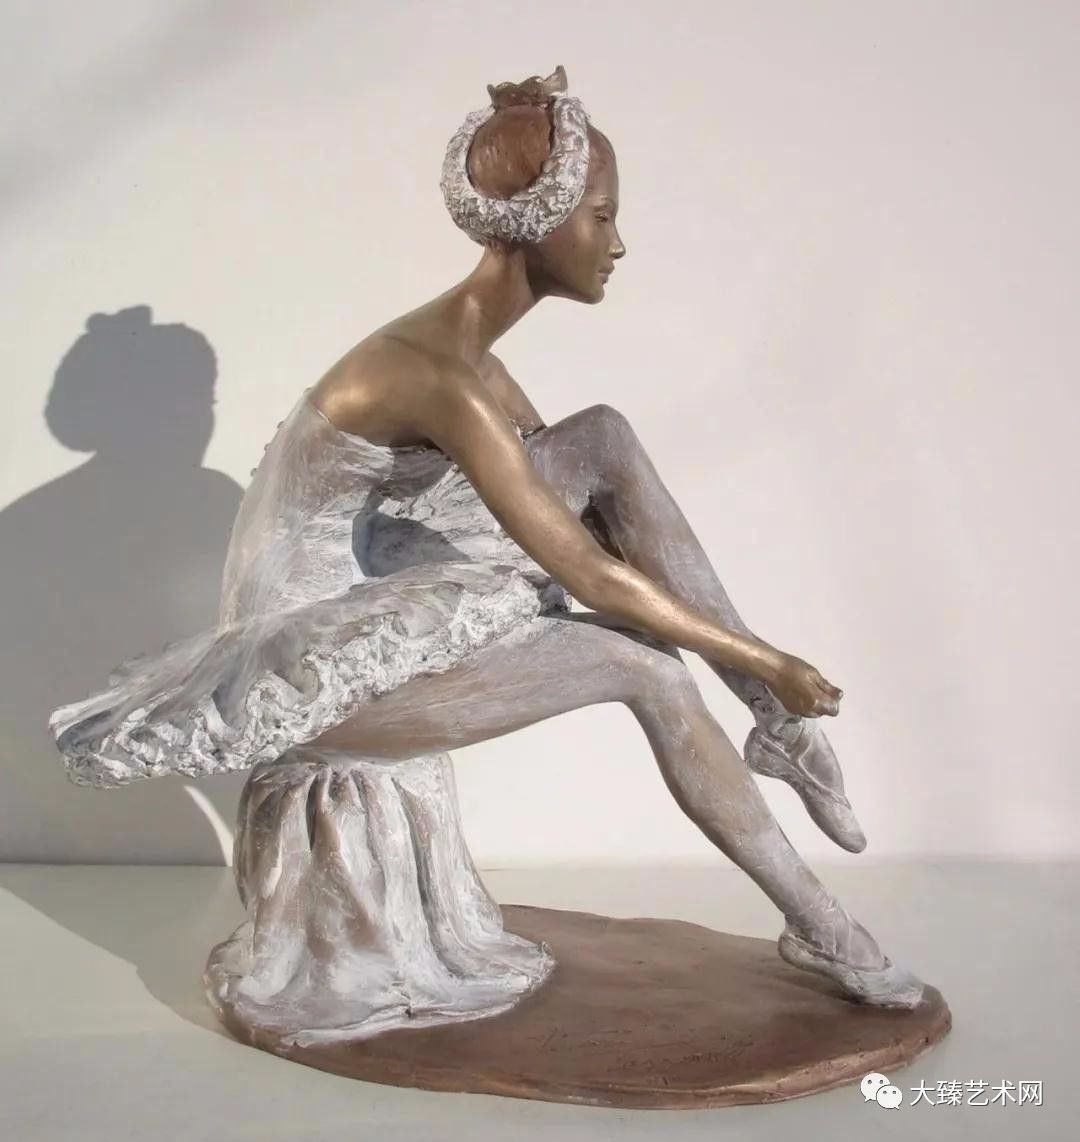 意大利艺术家vittoriotessaro人体雕塑赏析